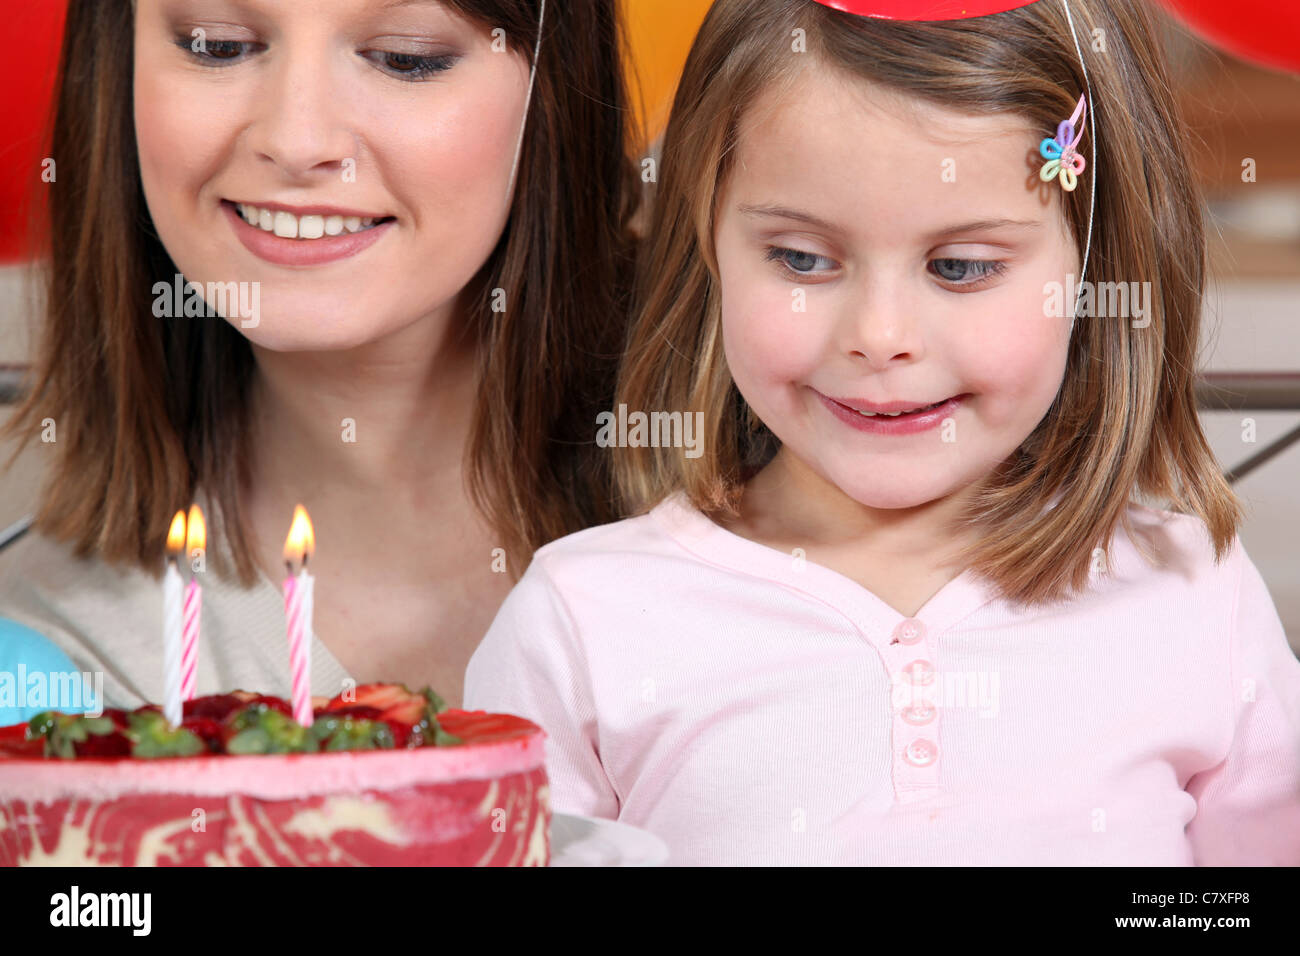 Giovane ragazza sul suo quarto compleanno Foto Stock